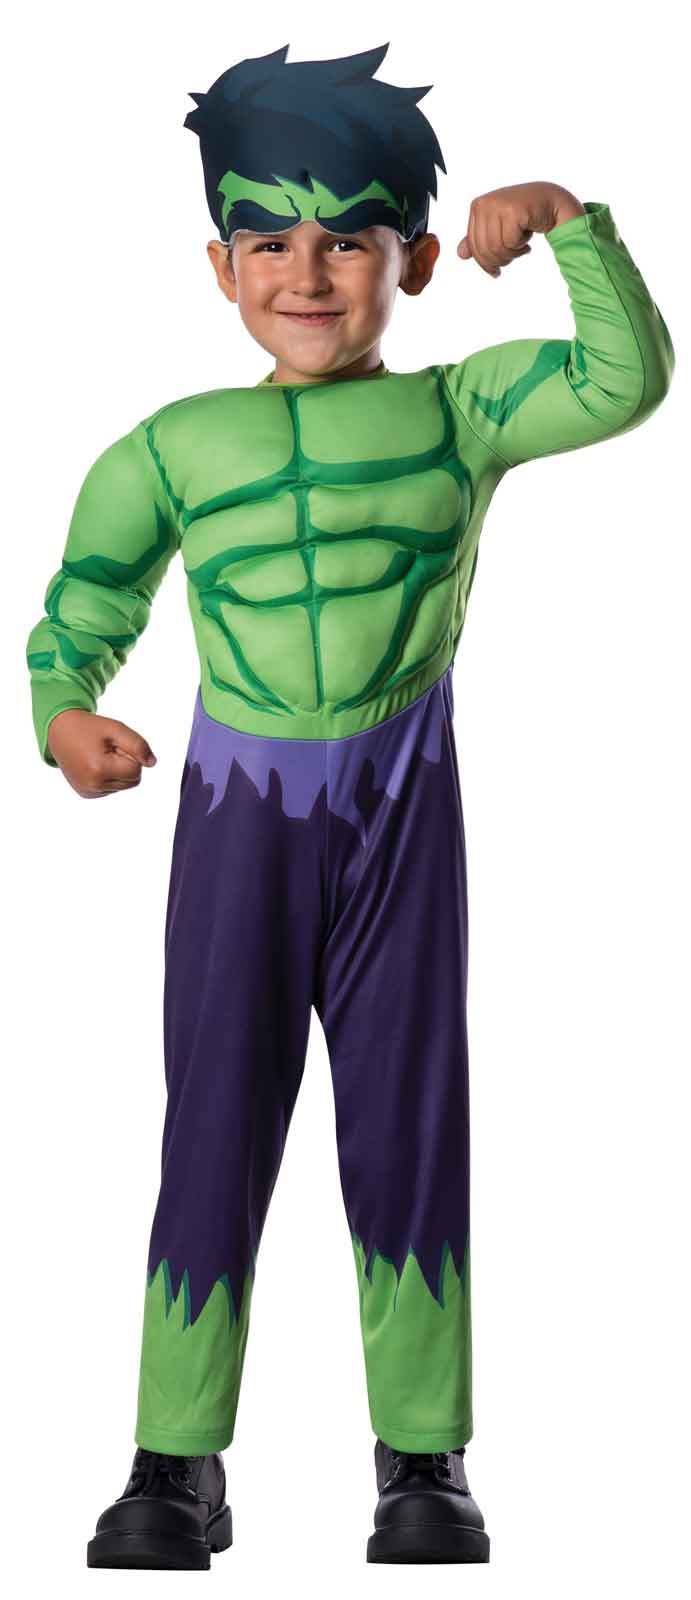 Avengers Assemble Hulk Toddler Costume